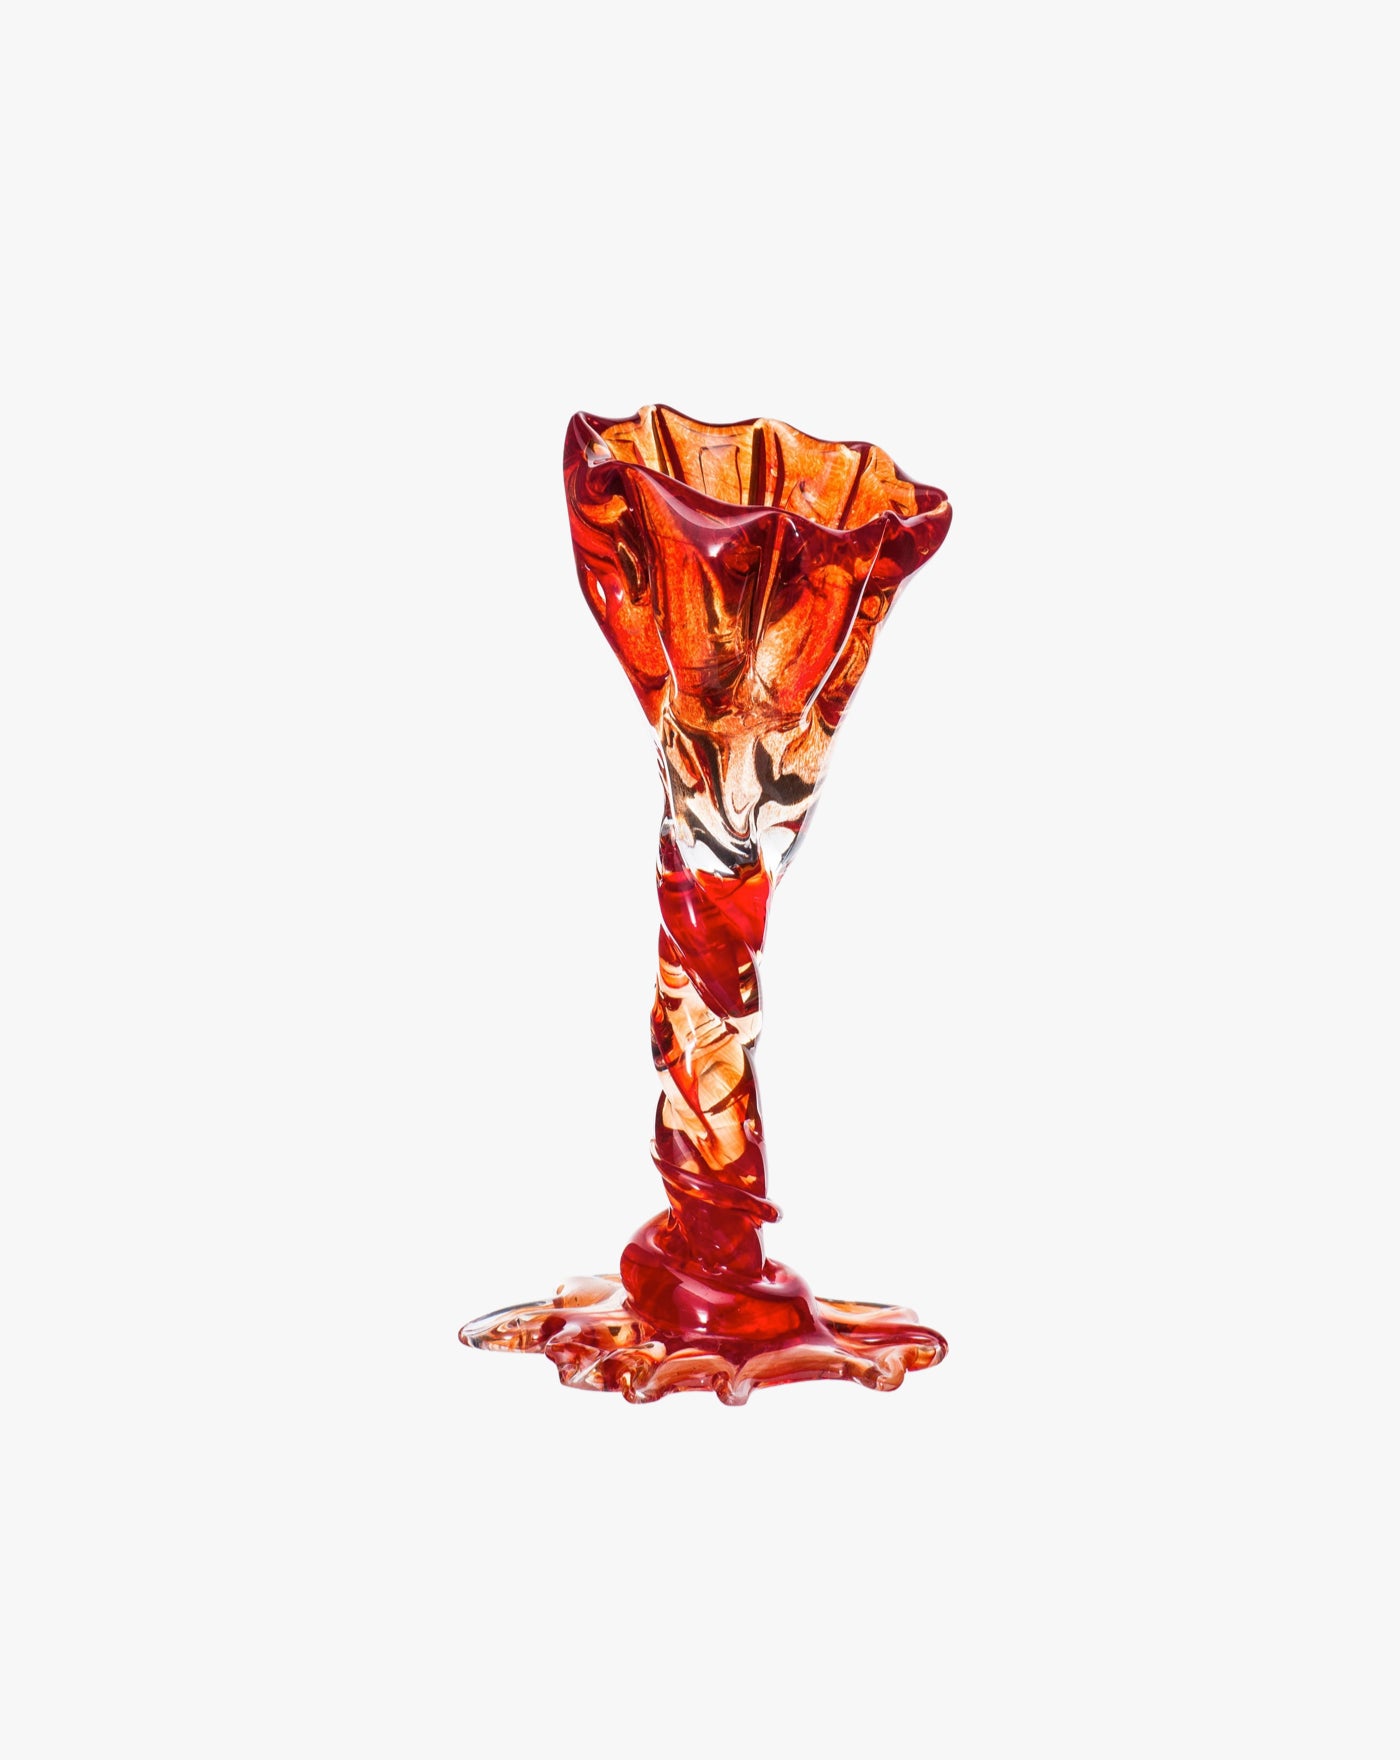 Spiky Cocktail Glass - Red #2 Szkło Studio